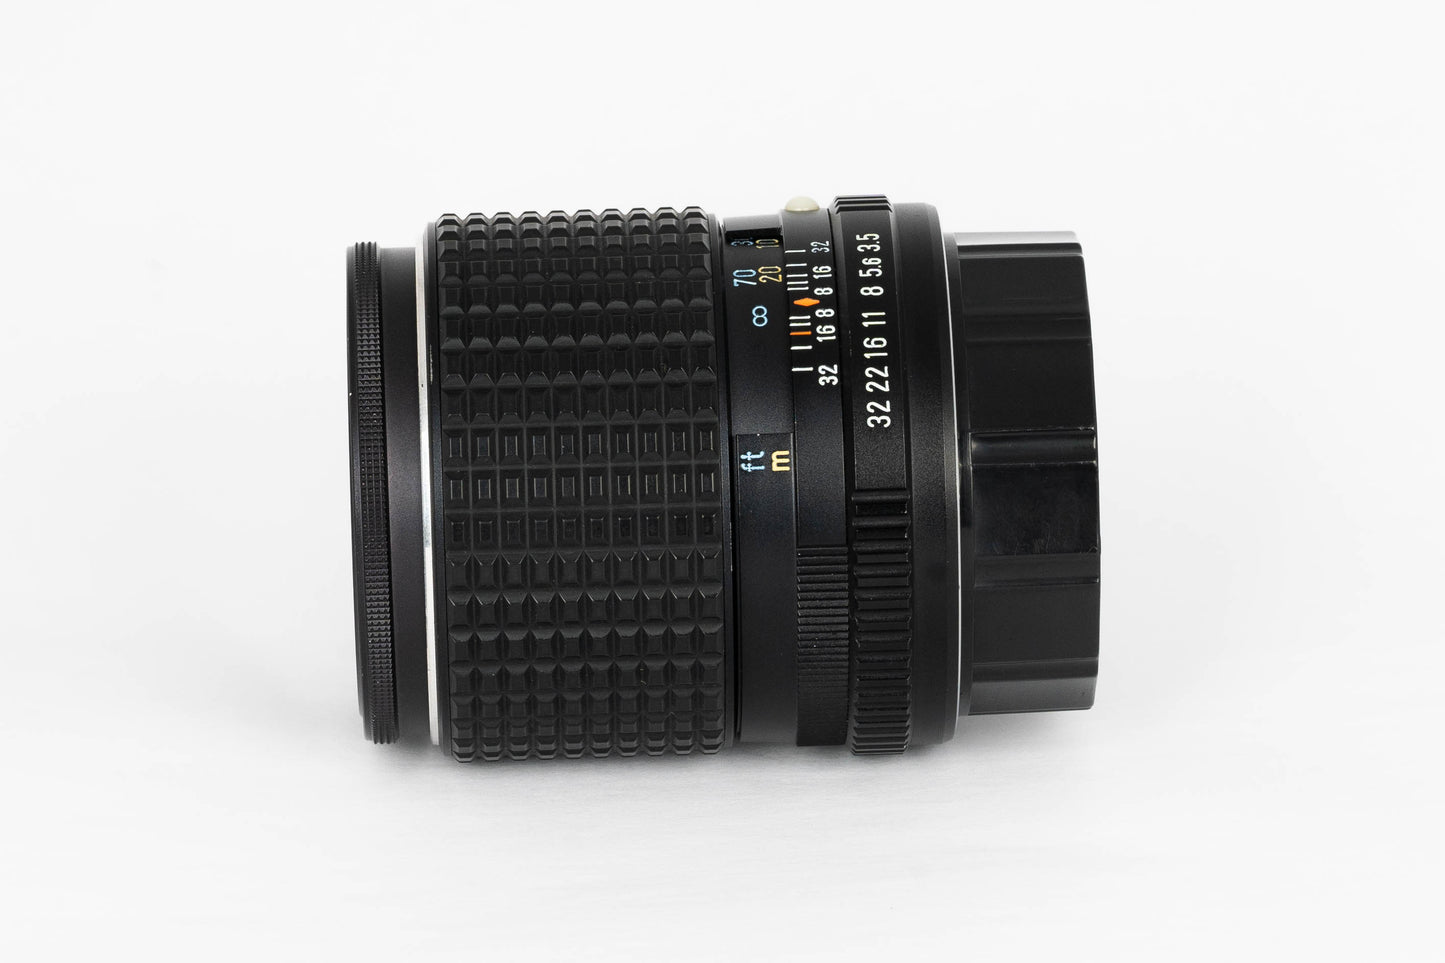 SMC Pentax-M 135mm F/3.5 MF Lens For K Mount